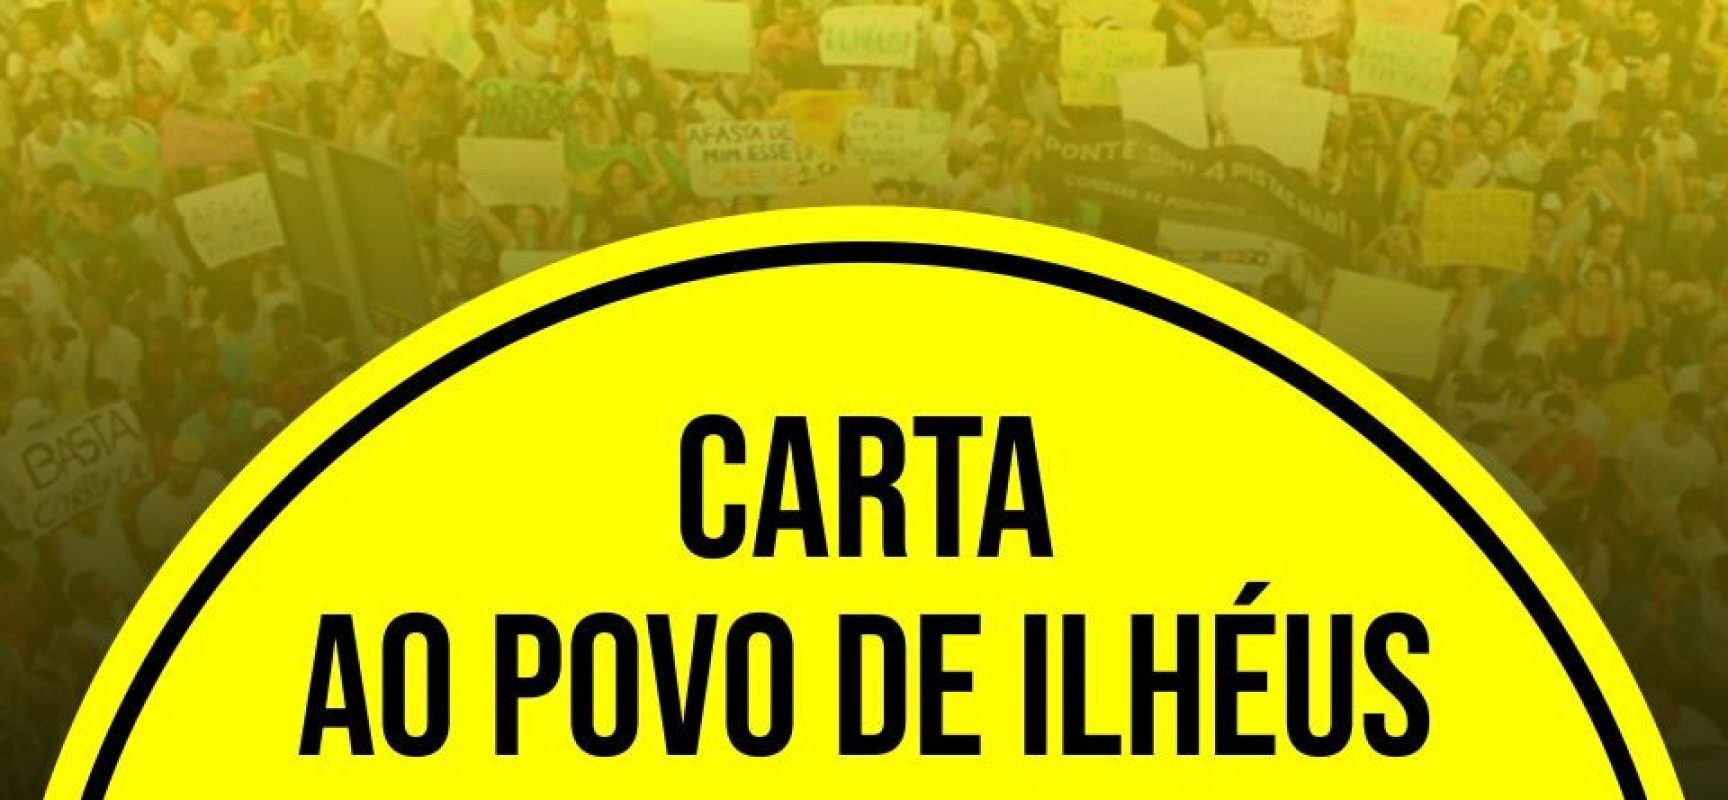 PSOL: Carta ao Povo de Ilhéus